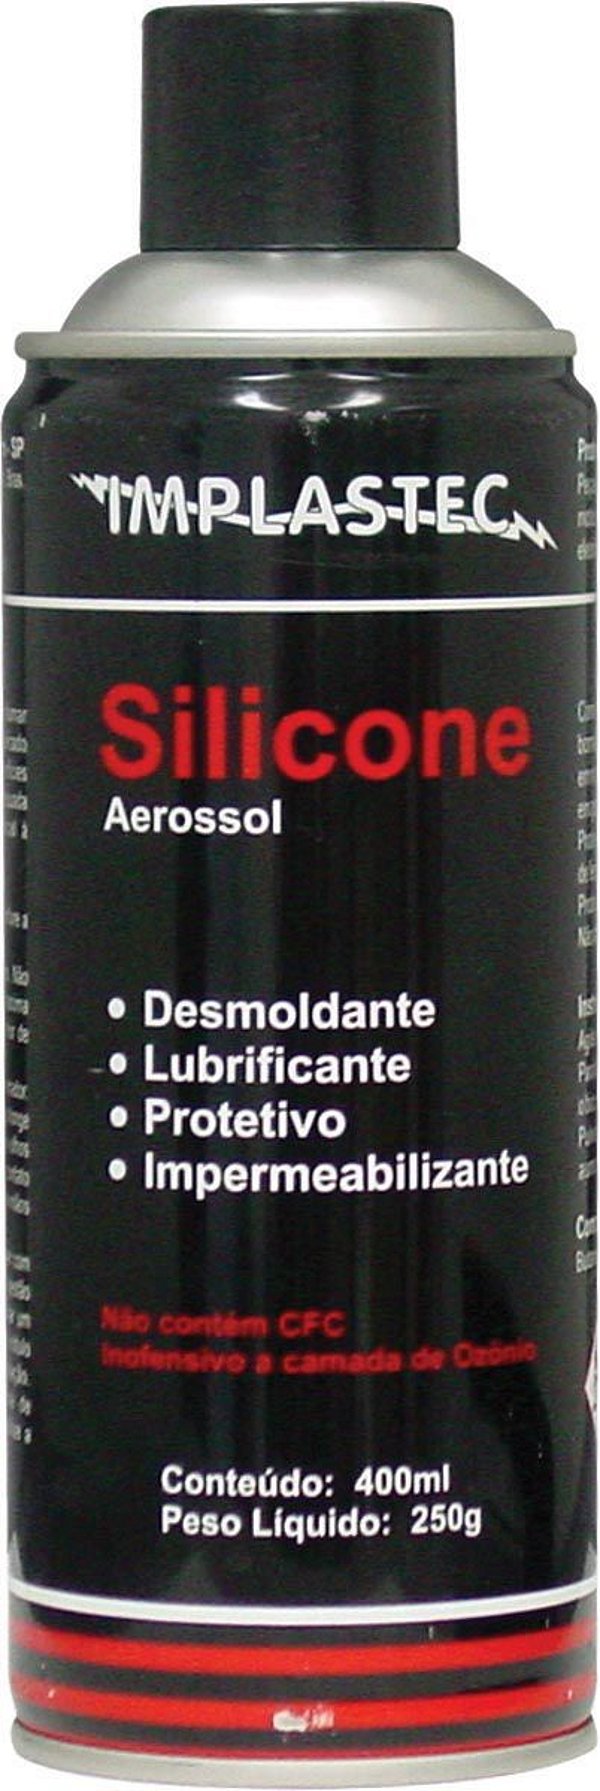 Silicone Aerosol 250g/400ml